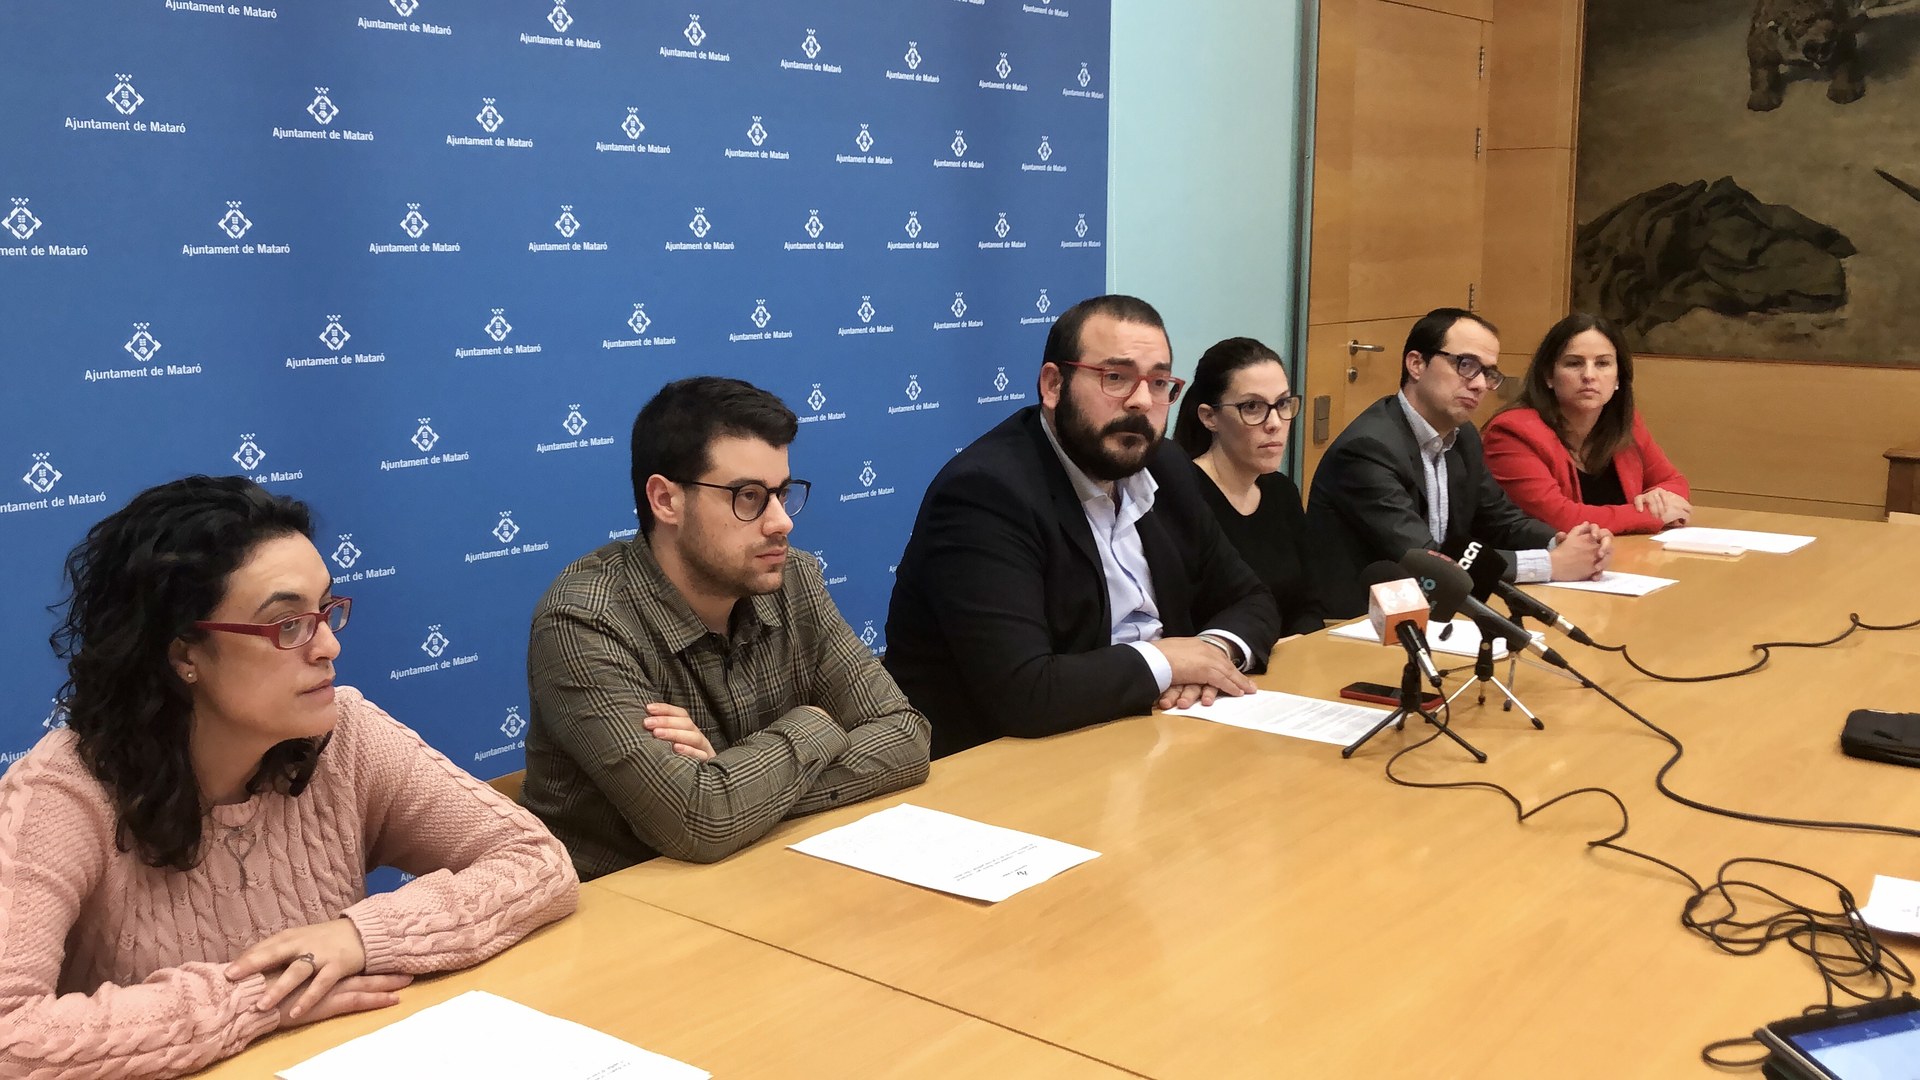 Els delictes han augmentat a Mataró un 7,7% durant el 2019